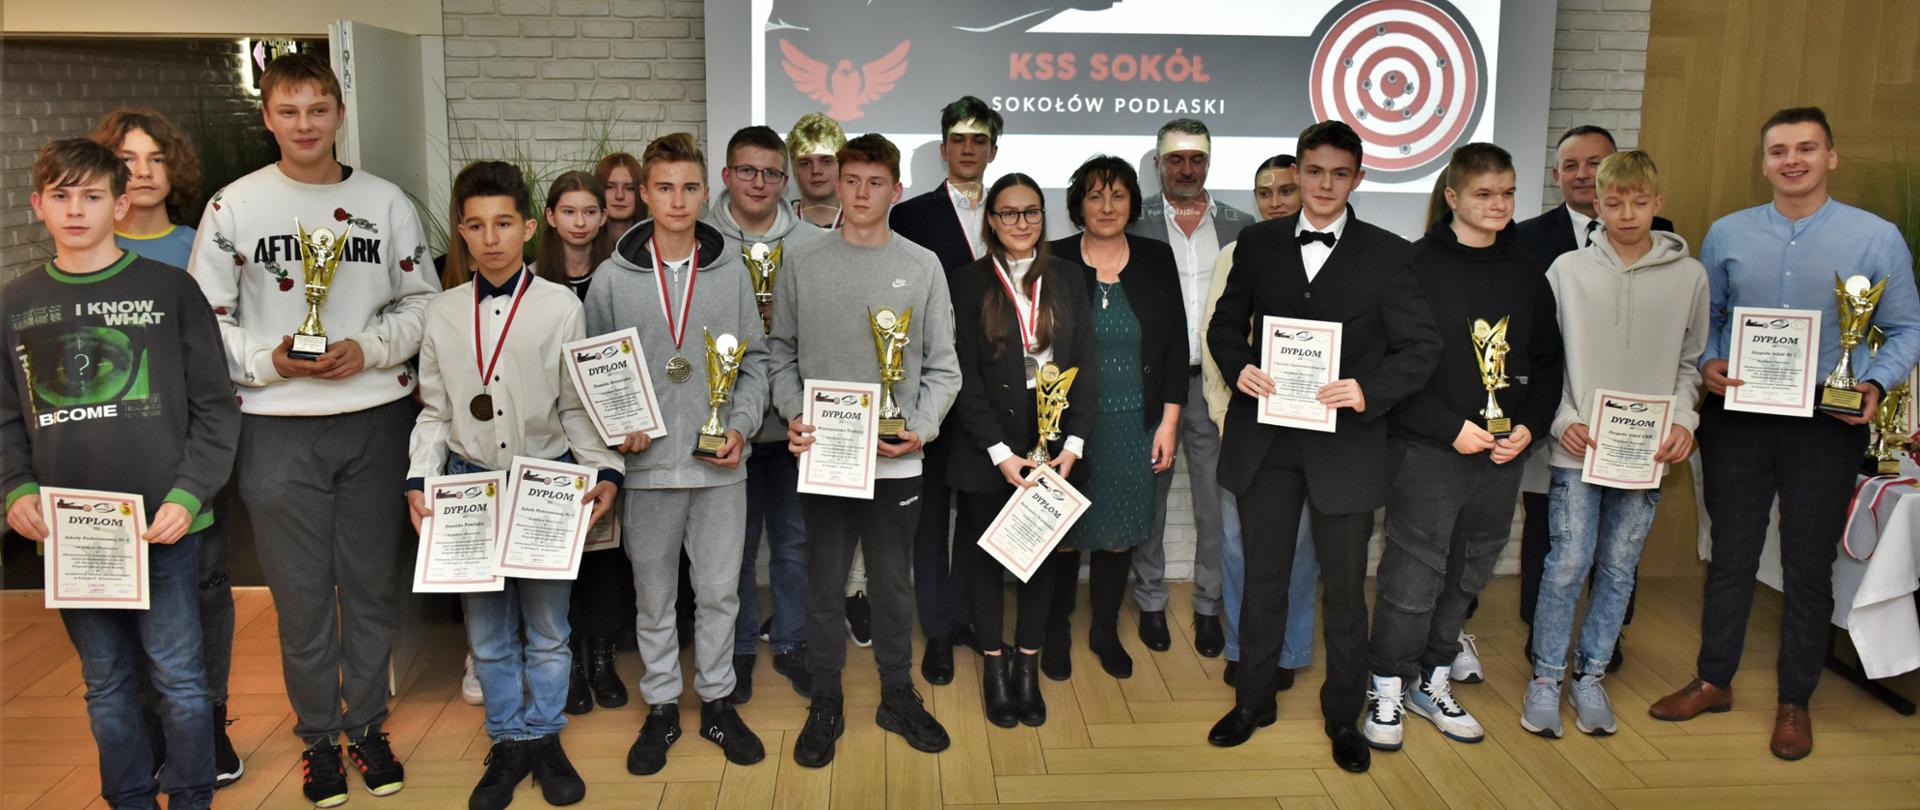 Zdjęcie grupowa, na którym starosta Sokołowski Elżbieta Sadowska stoi wraz ze zwycięzcami zawodów. Młodzież trzyma w rękach puchary i dyplomy, a na szyjach zawieszone są medale.